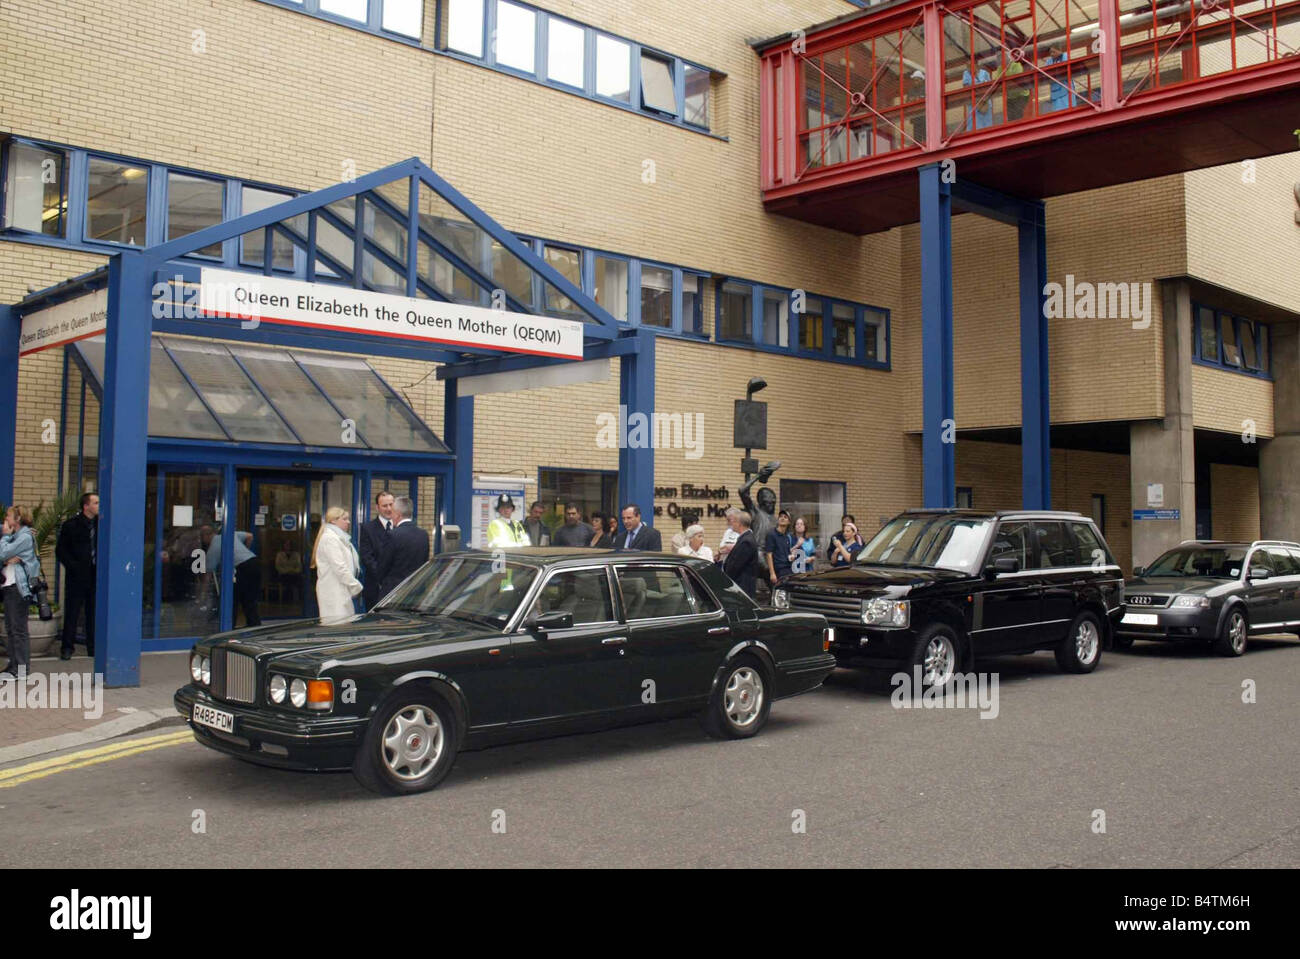 Le Prince Charles et Camilla Venez à St Marys à visiter les patients blessés au cours des attentats terroristes de Londres le jour avant qu'elles soient respectées par Baraness Hanem Président de St Marys Juillet 2005 Mirrorpix Banque D'Images